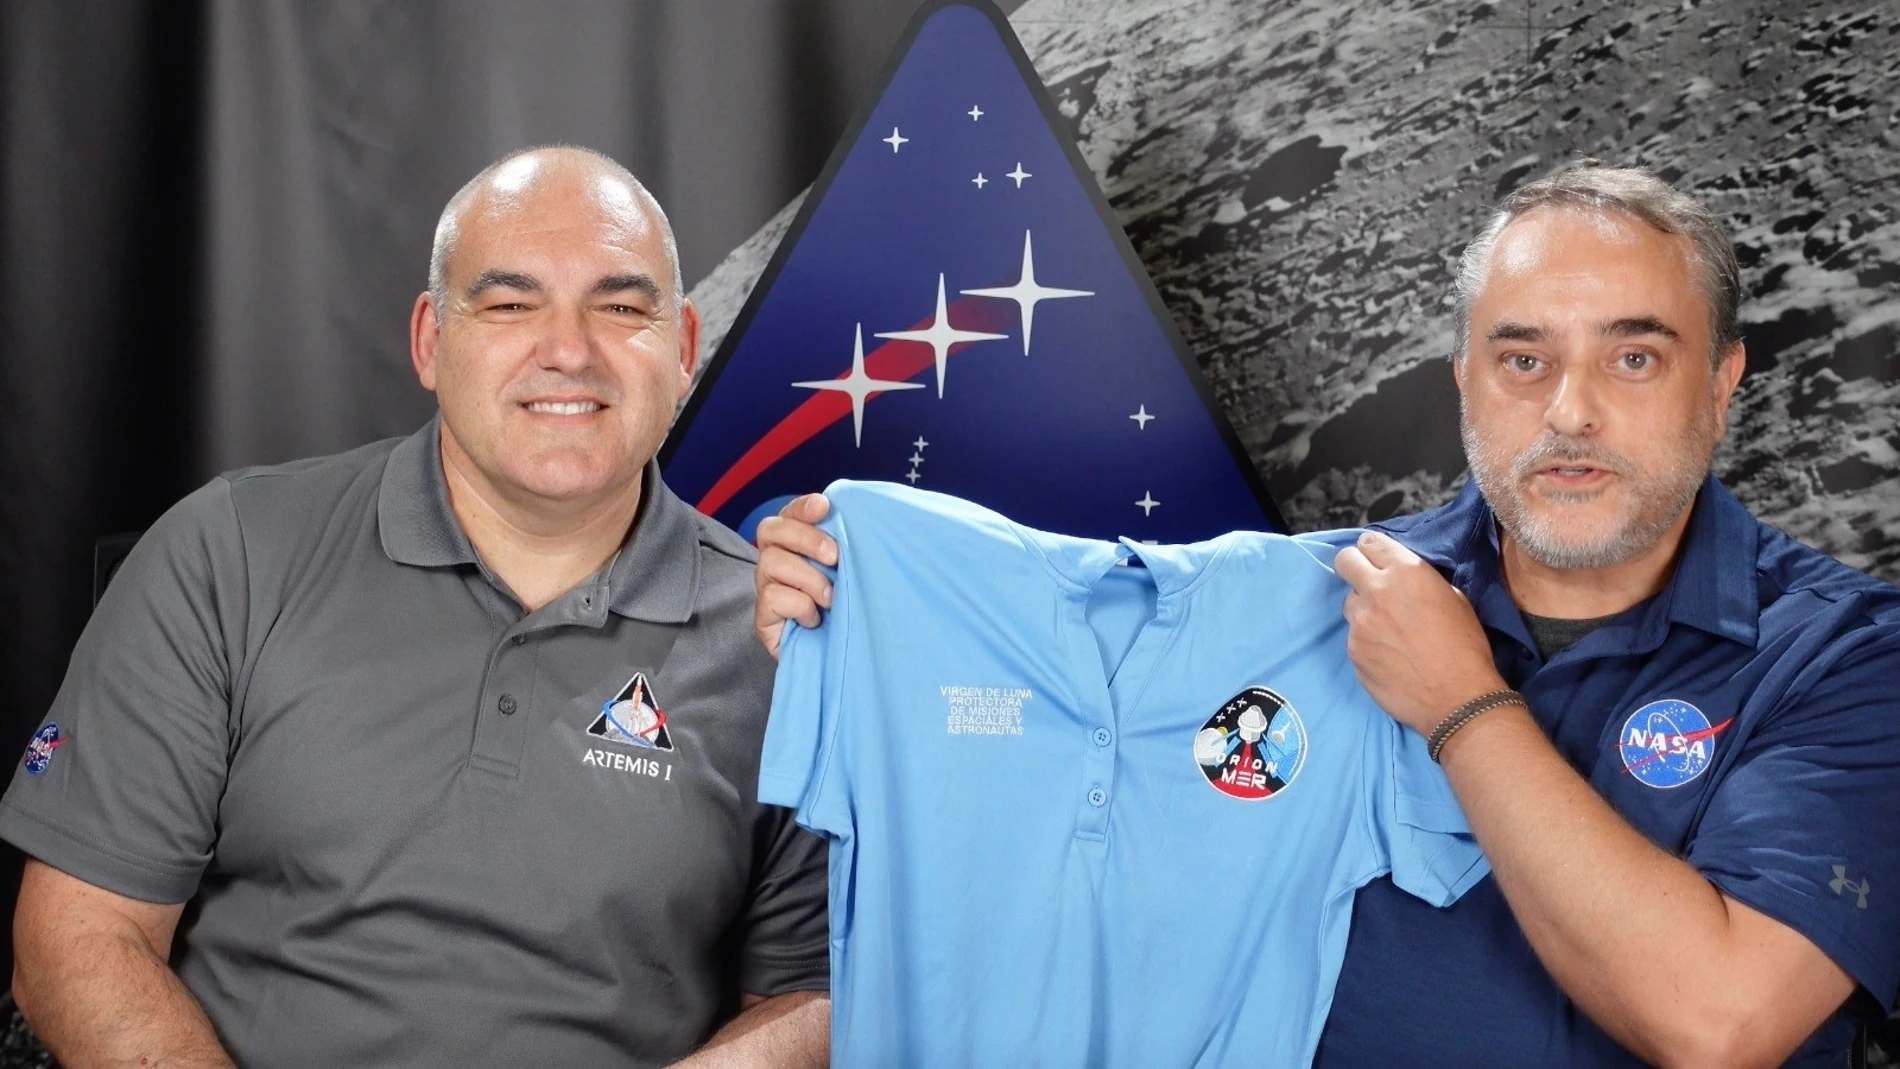 Los ingenieros españoles de la NASA Eduardo García Llama y Carlos García-Galán junto a la camiseta especial con una referencia a la Virgen de Luna. AYUNTAMIENTO DE POZOBLANCO